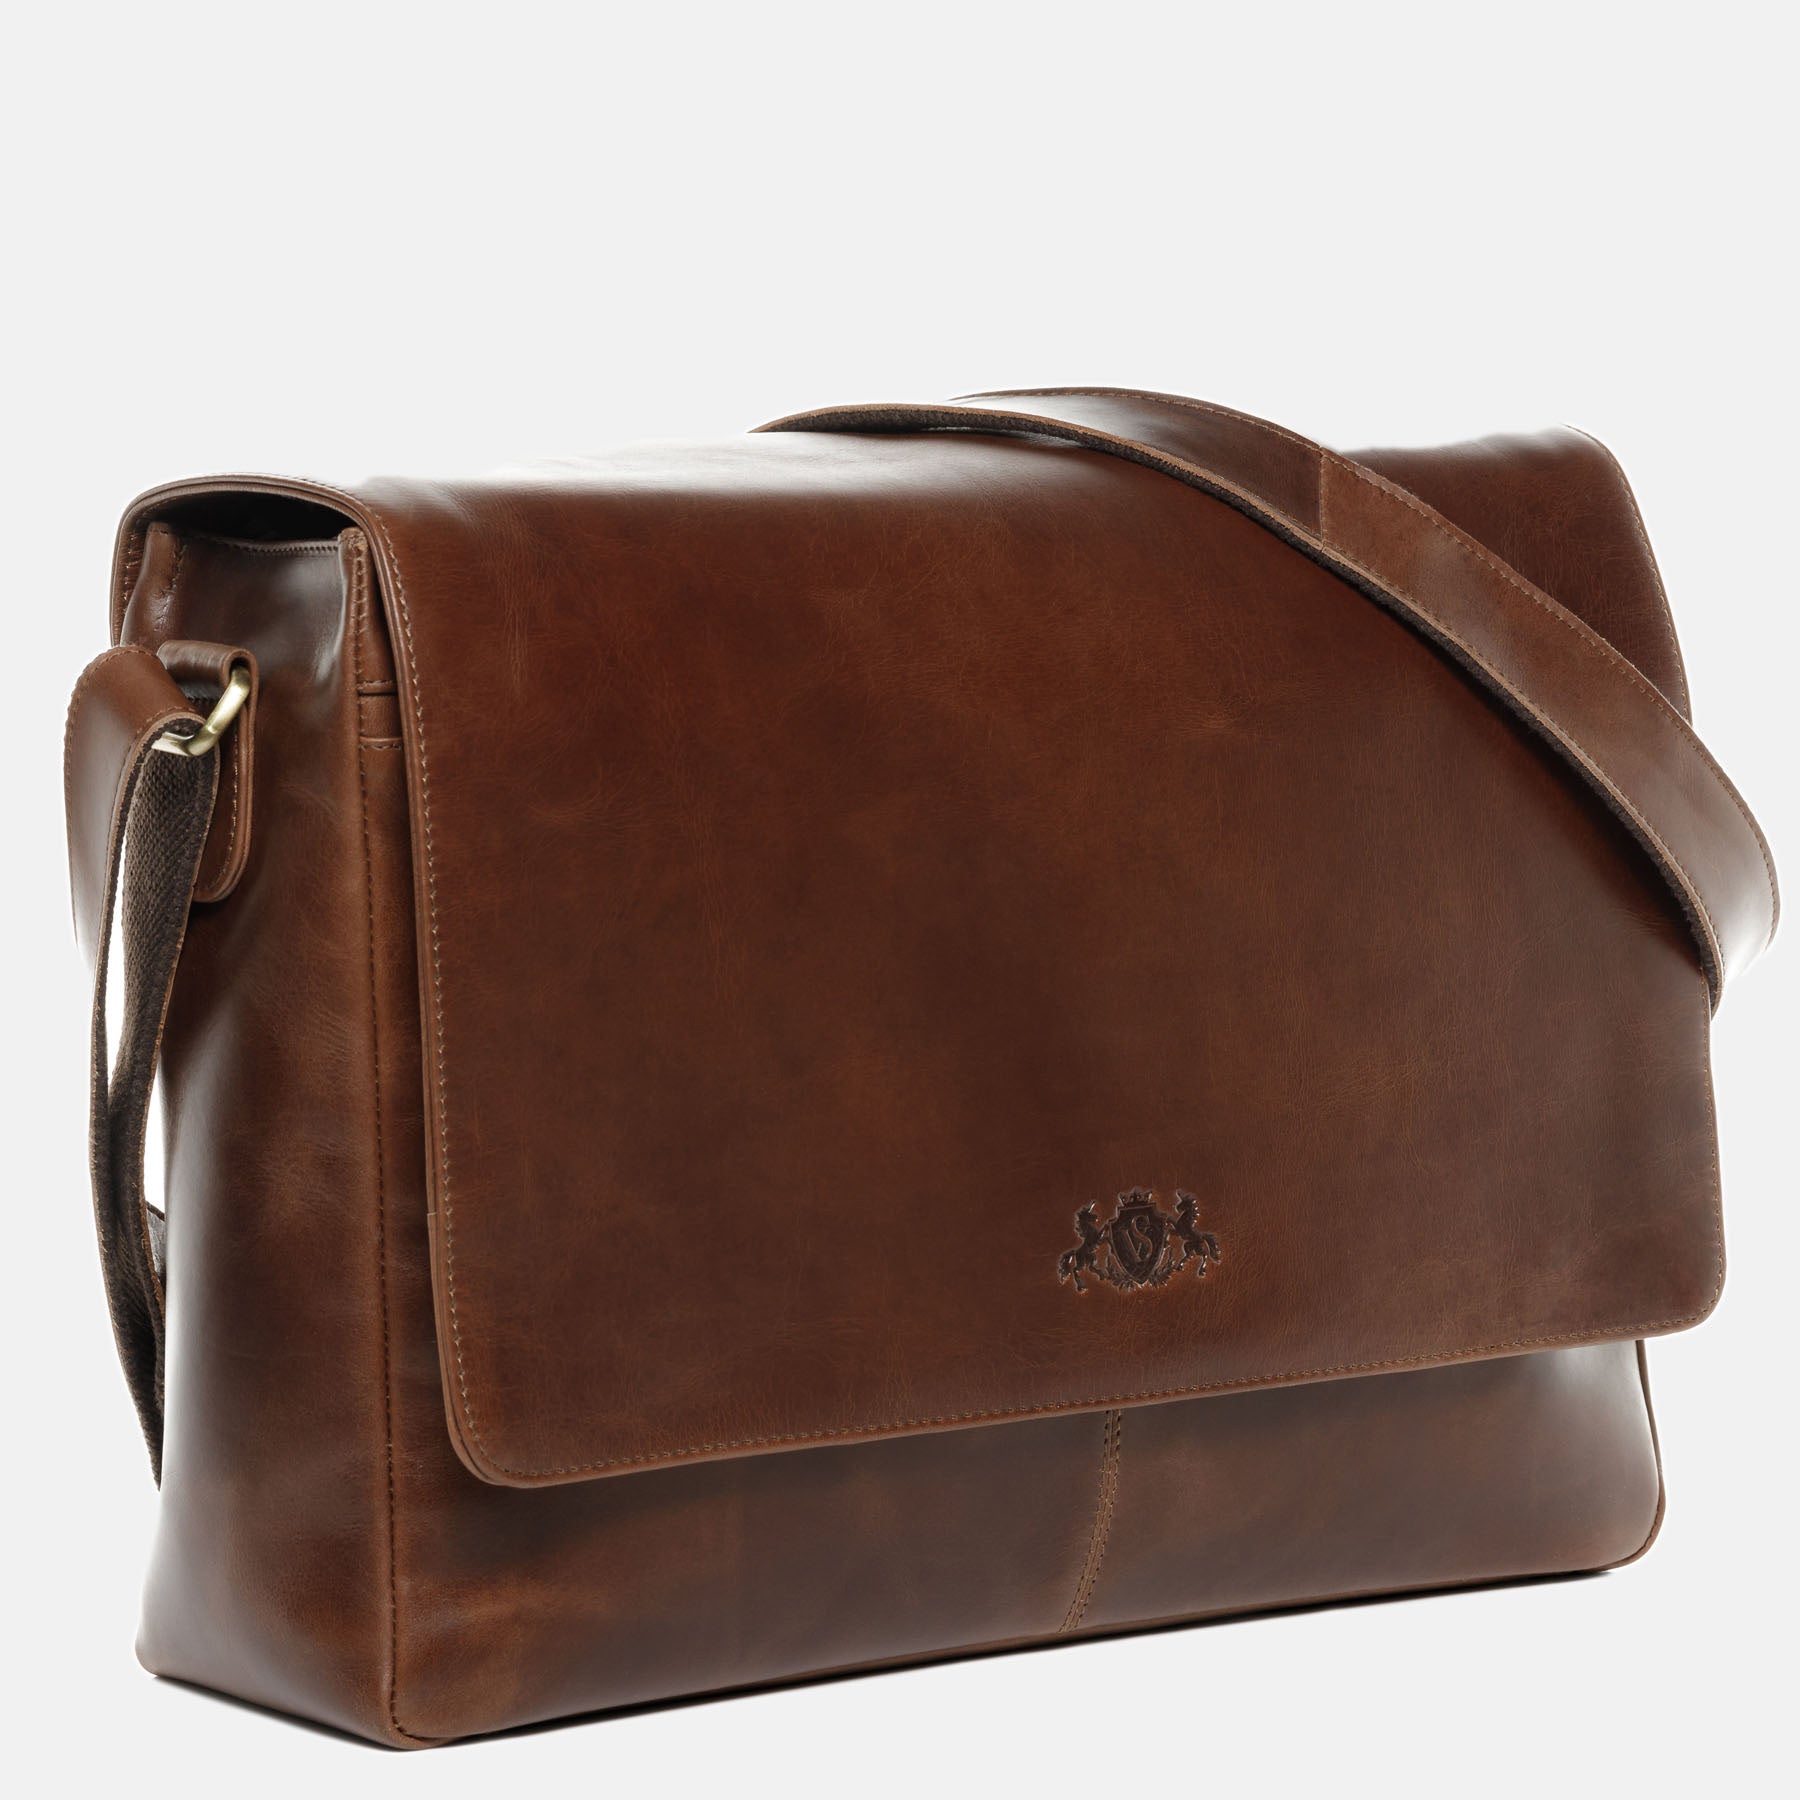 Messenger Bag SPENCER natural leather light brown